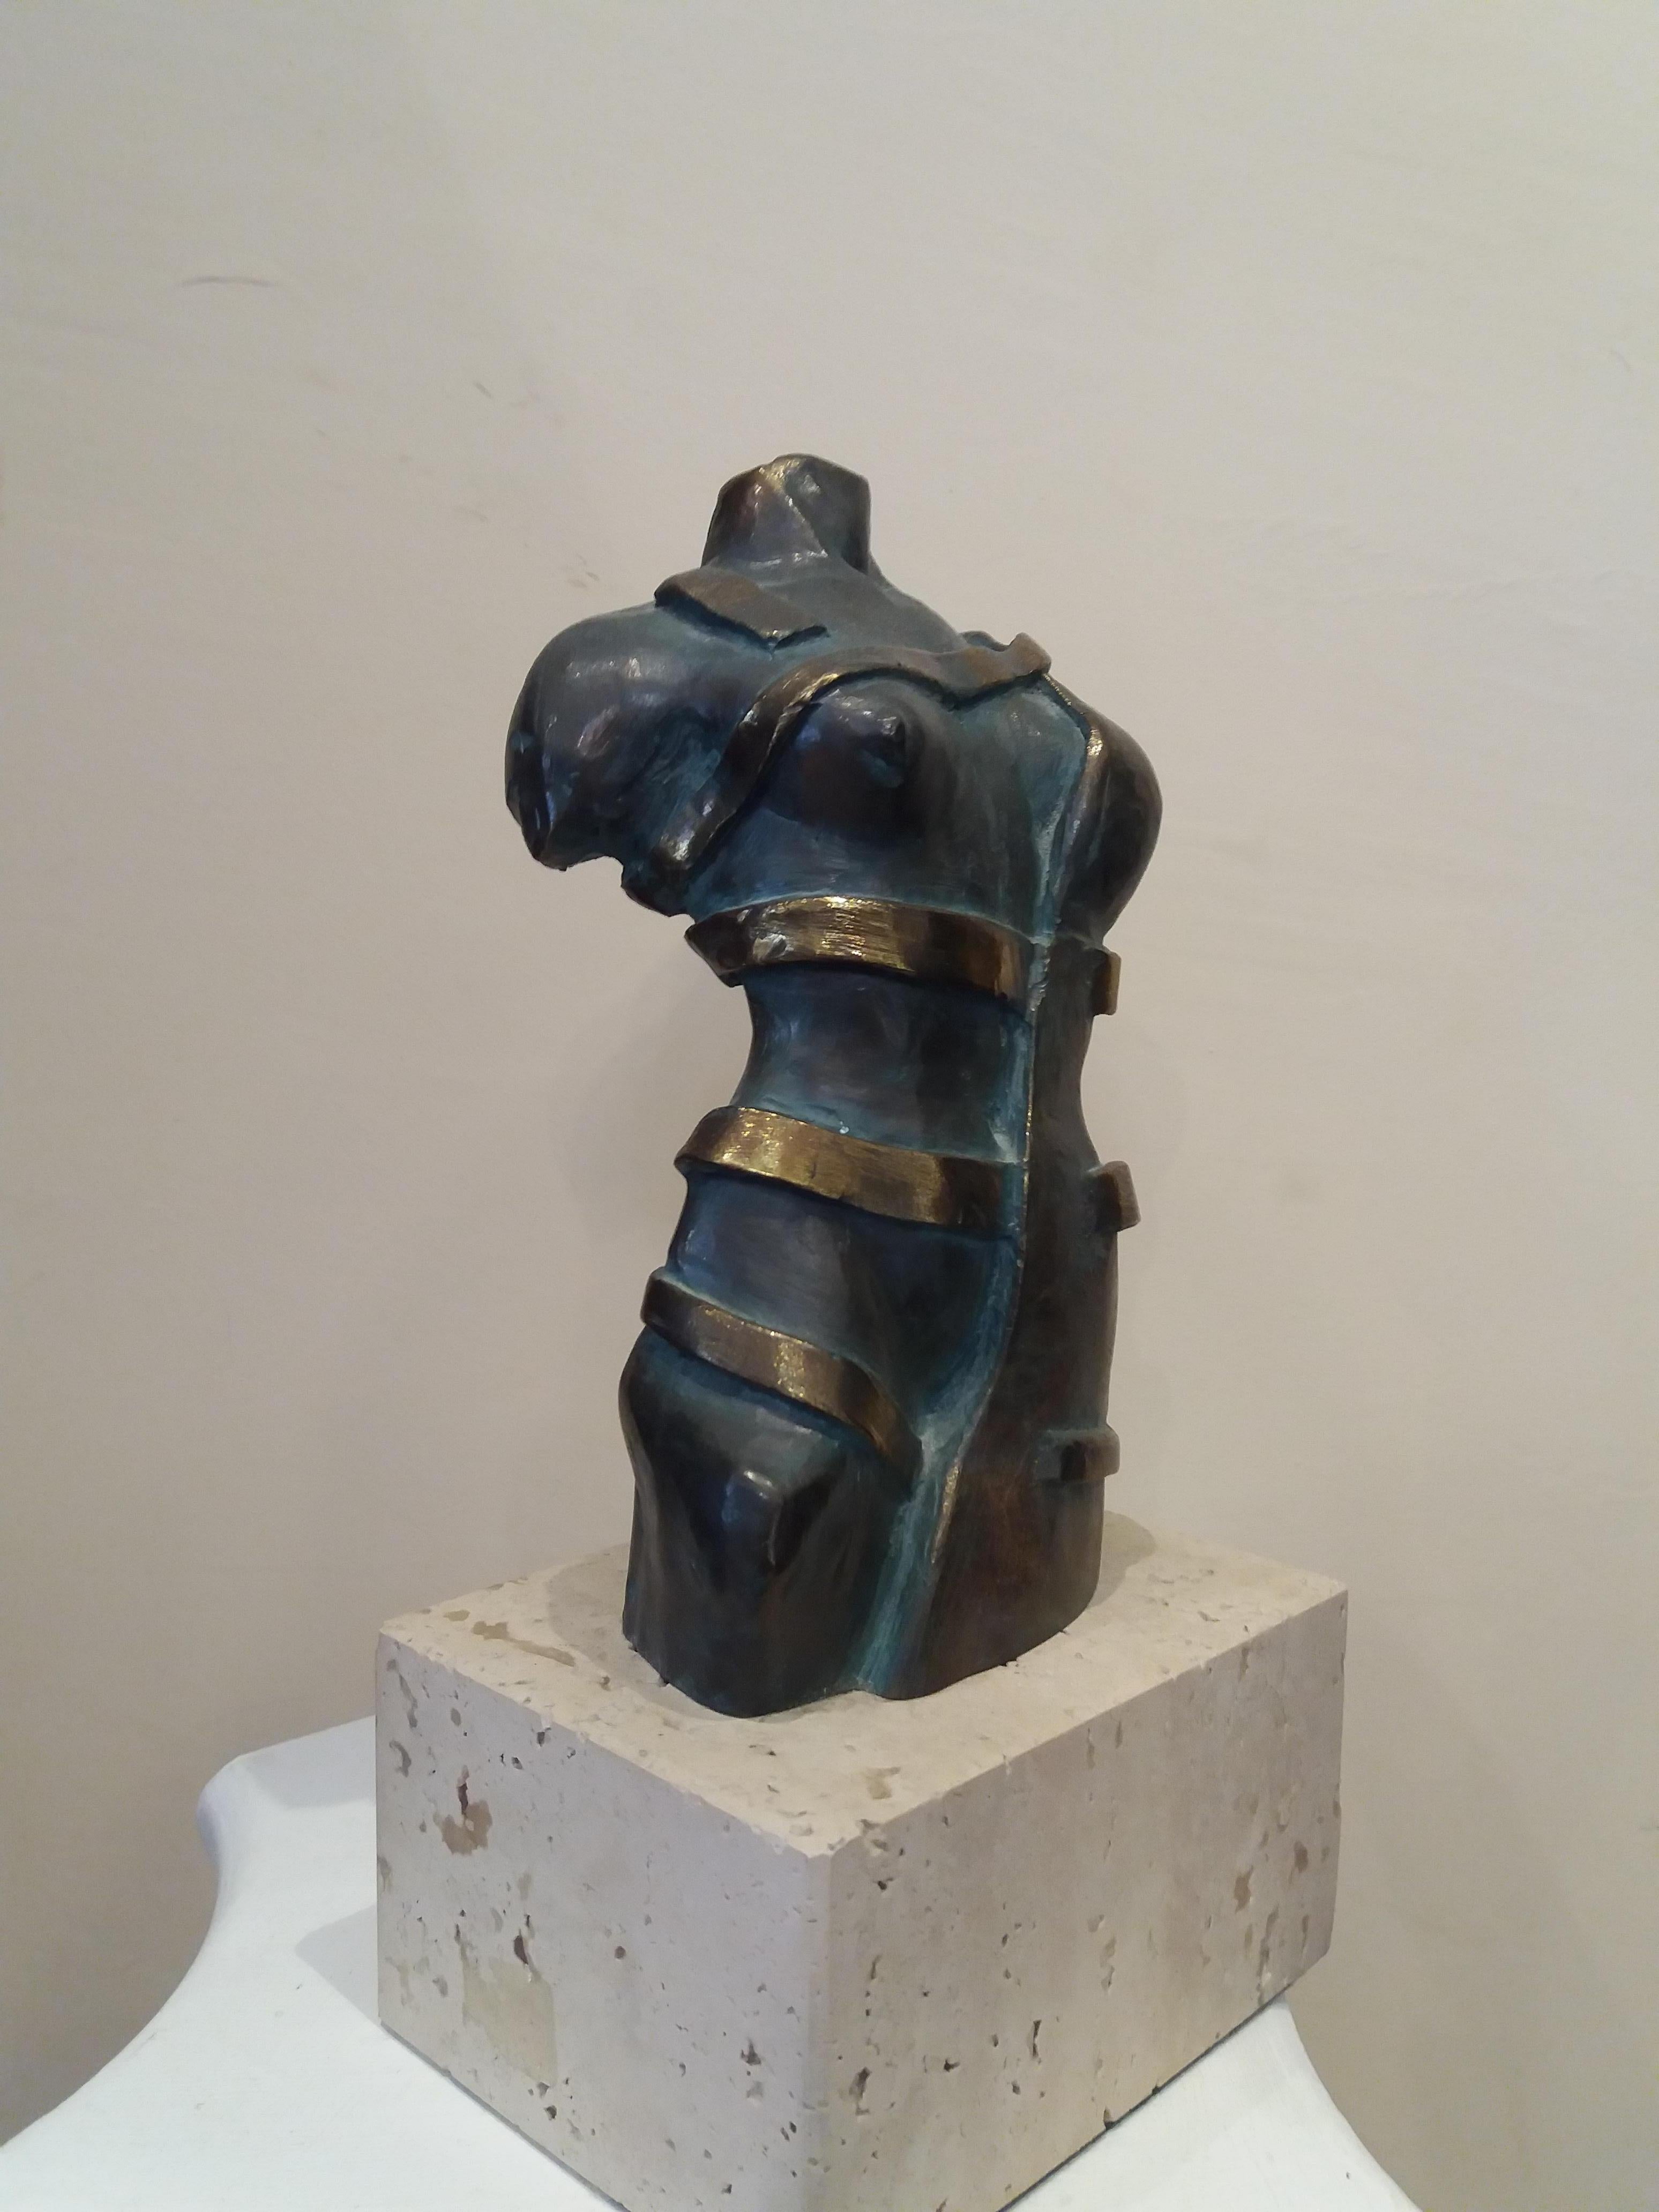 Fili Plaza Figurative Sculpture - Torso  Original resin esculpture